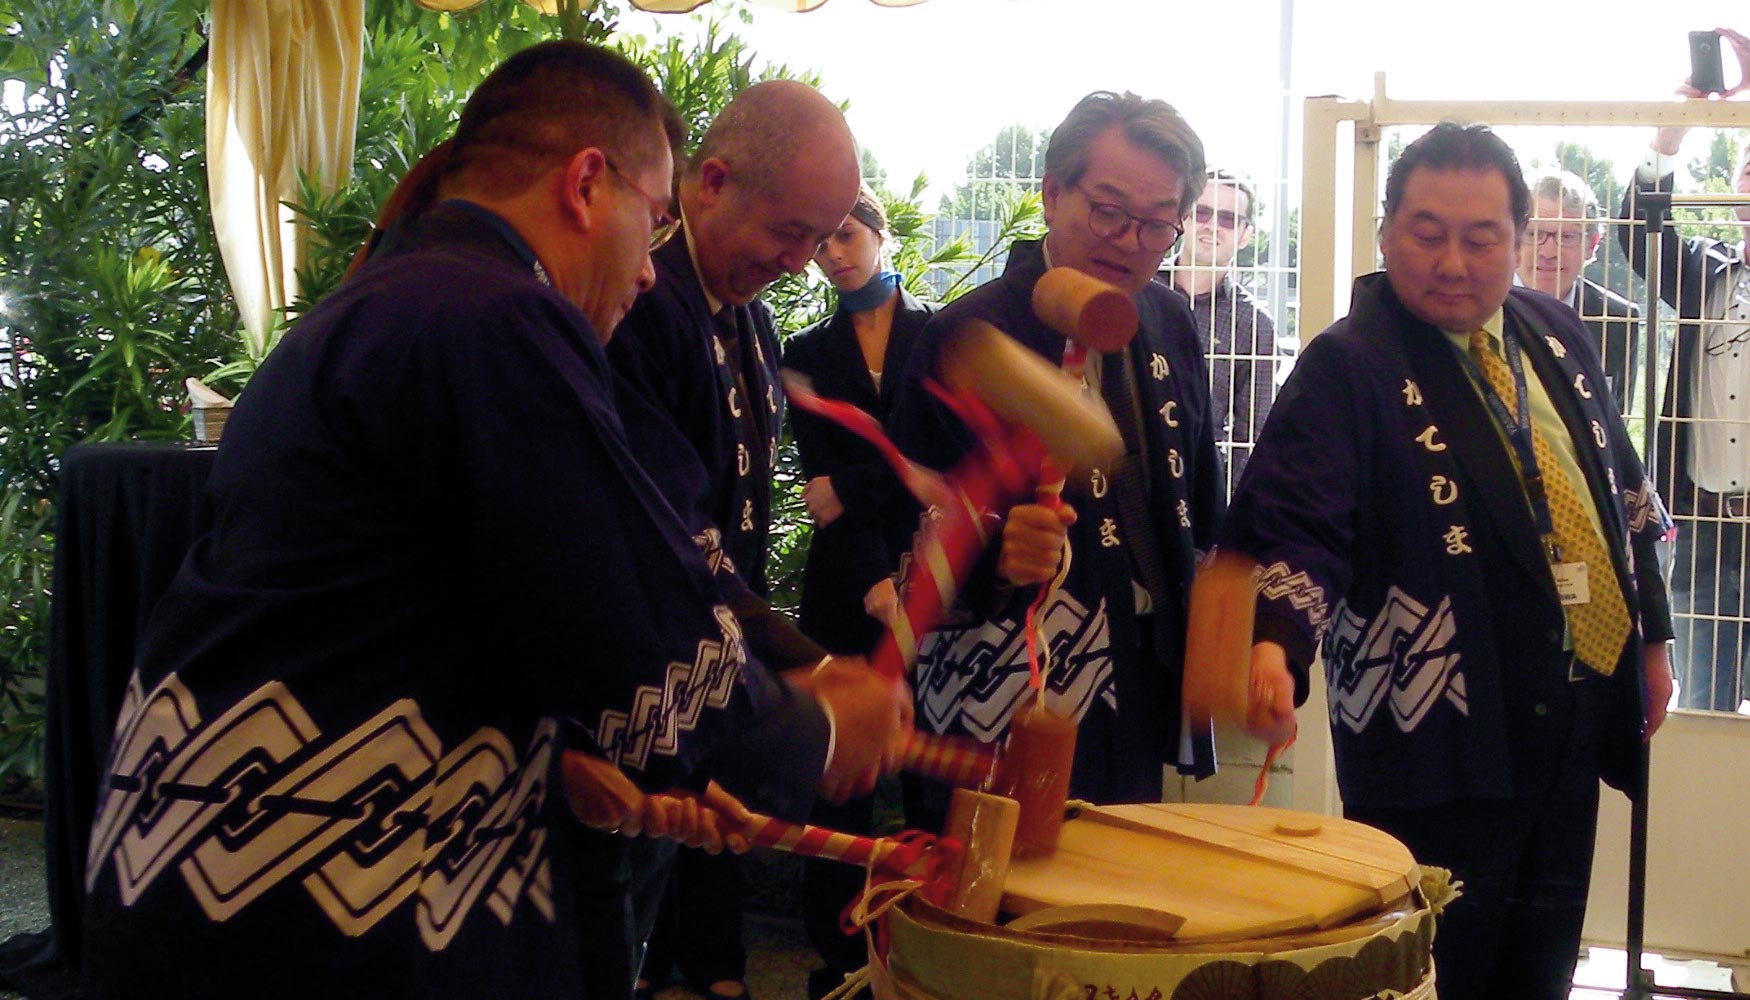 La Ceremonia del sake consiste en golpear el barril hasta obtener el sake, smbolo de buena fortuna